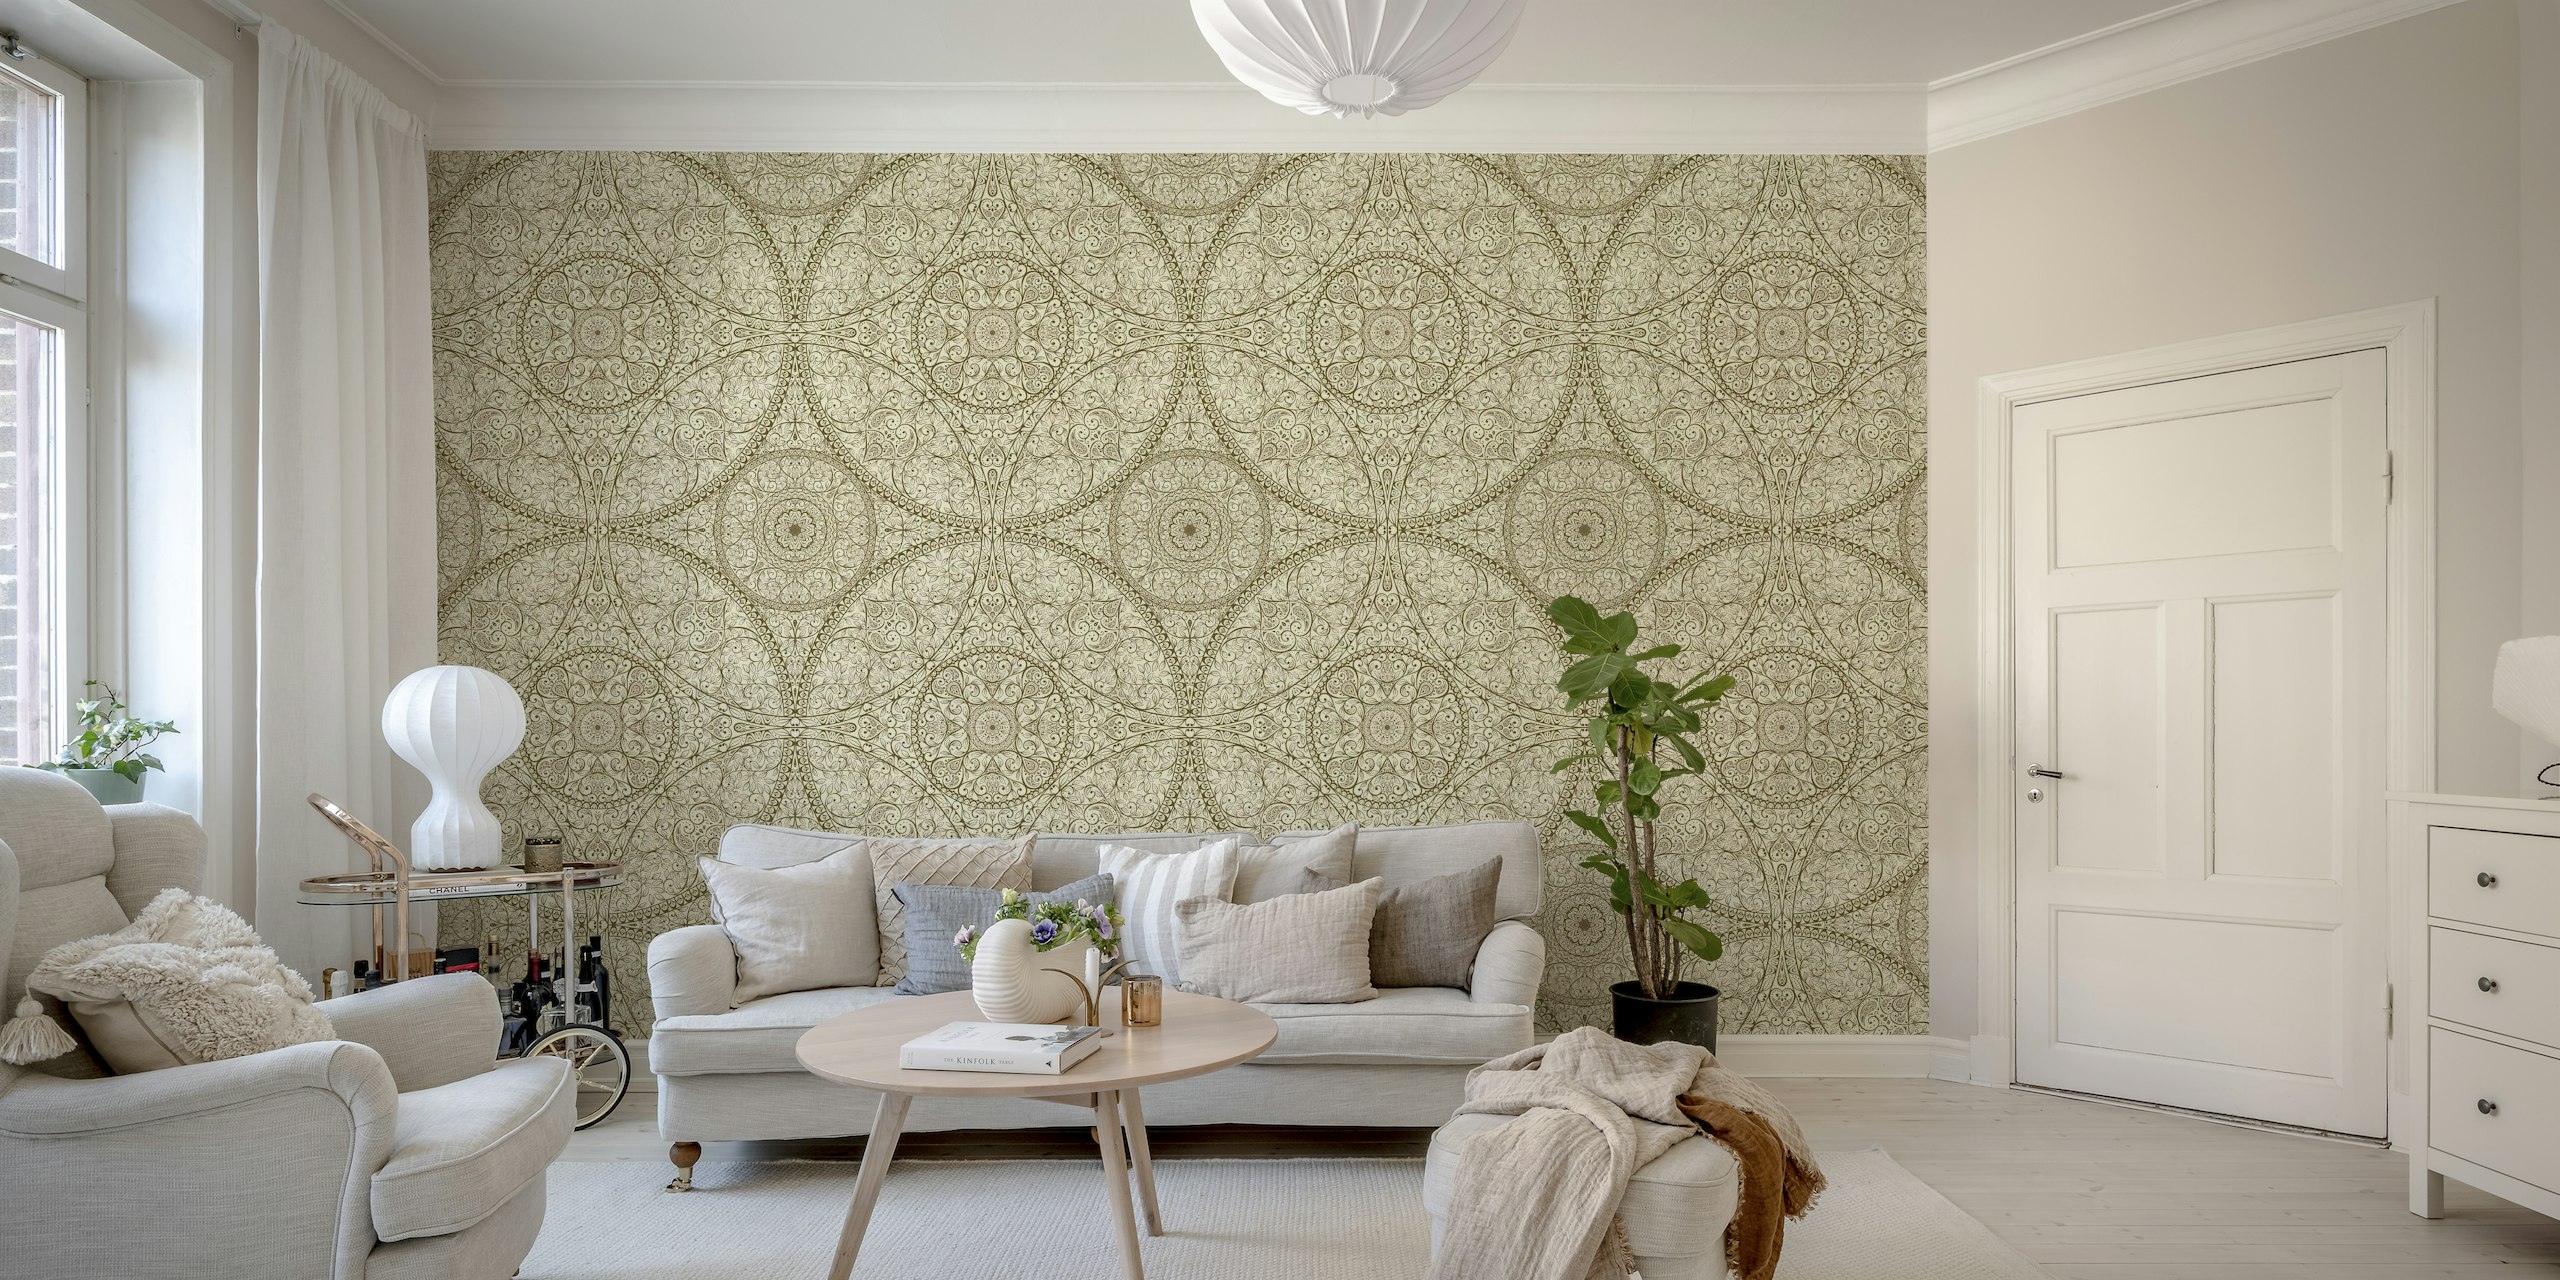 Luxurious golden mandala wallpaper